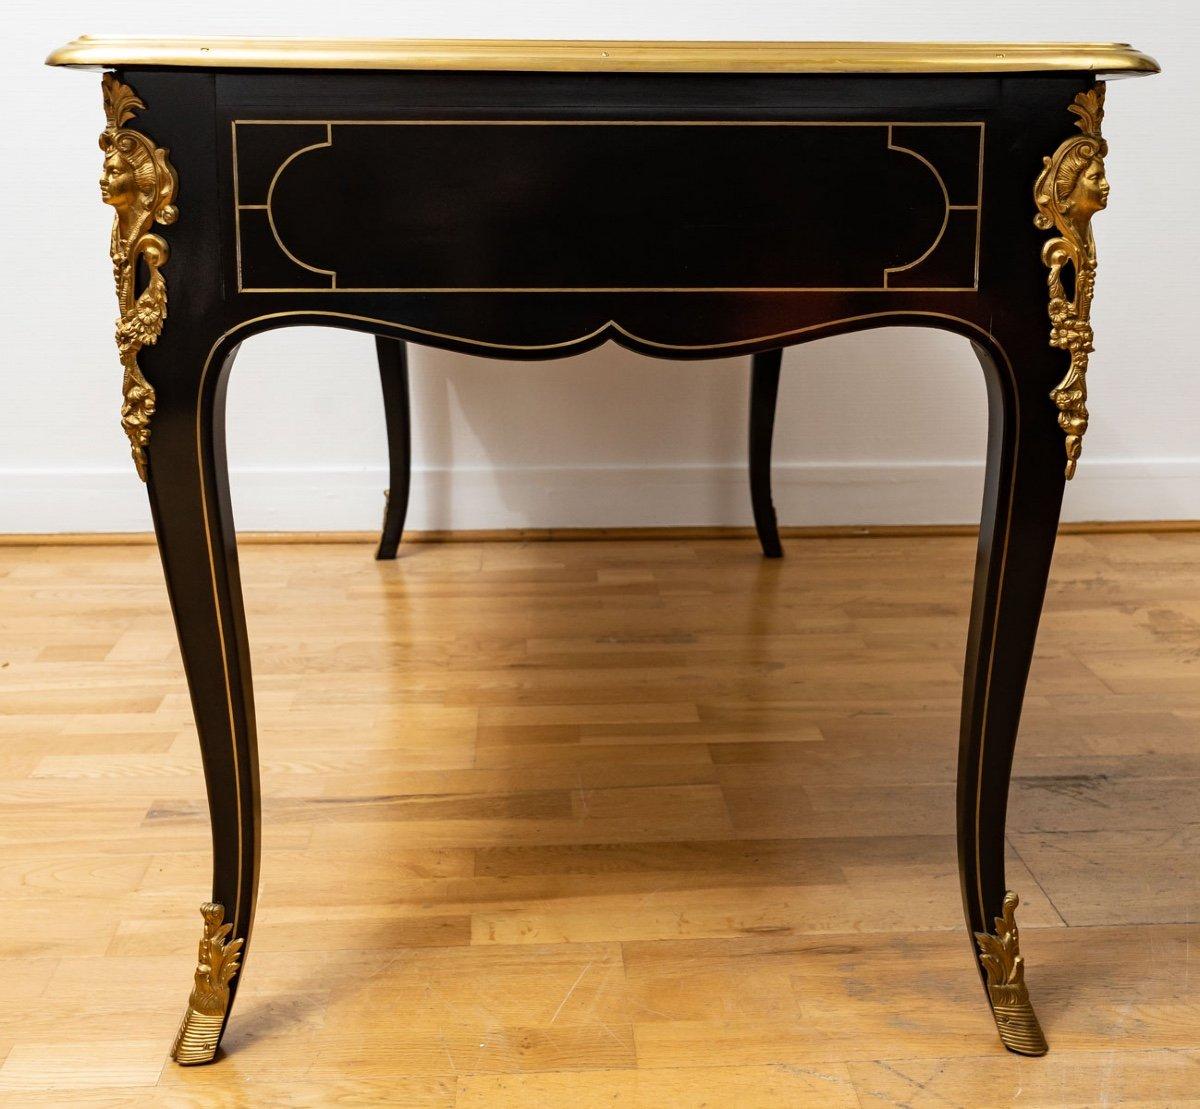 Magnifique bureau plat en bois noirci, de style Napoléon III, réalisé par la maison Gouffé.

La société Gouffé est un grand fabricant de meubles français dont la qualité de fabrication n'est plus à démontrer. 

Ce somptueux bureau, datant du tout